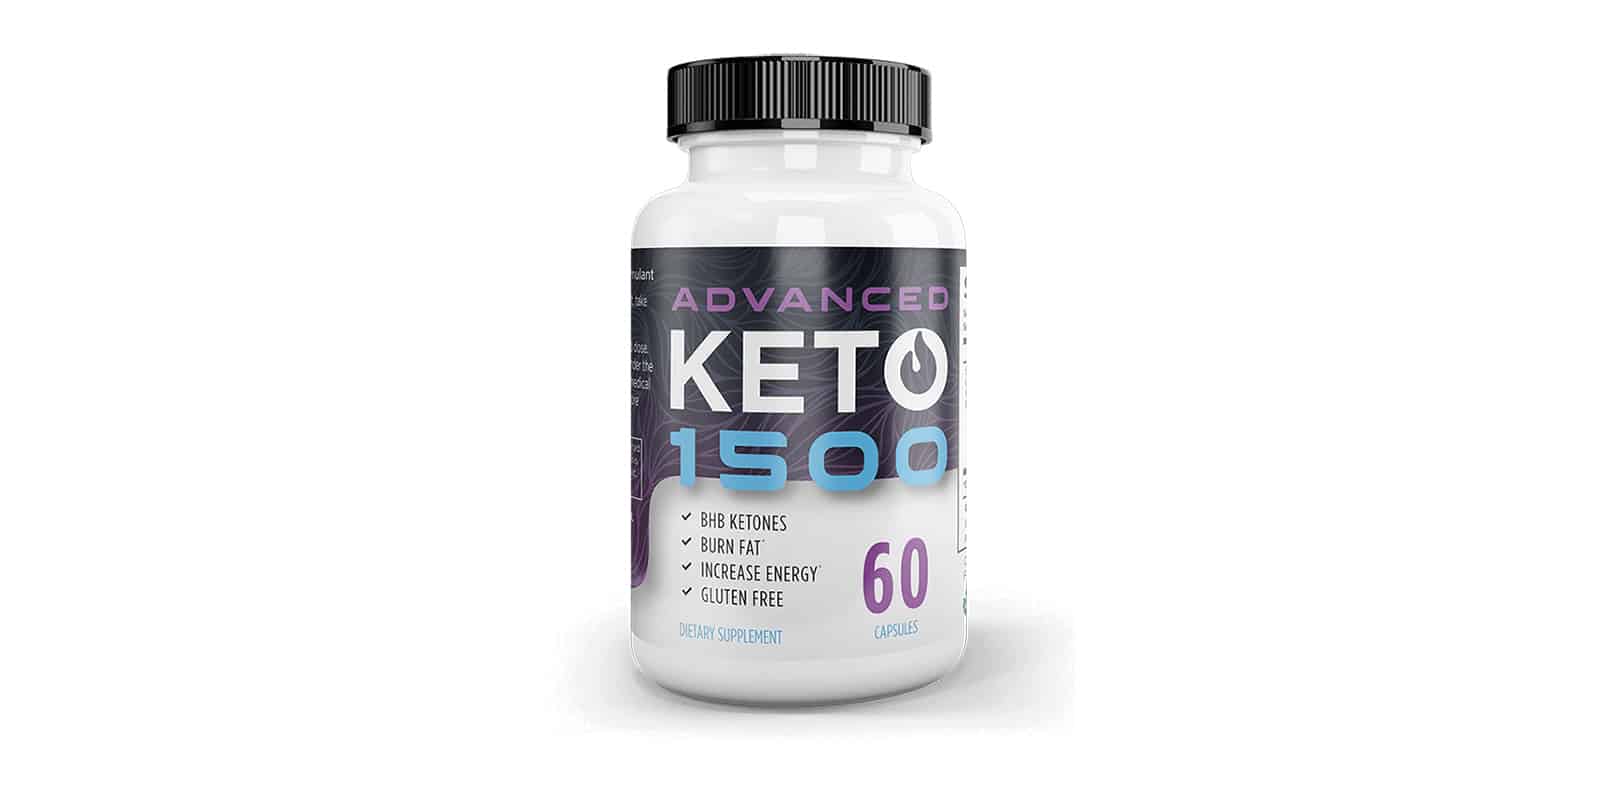 Keto-Advanced-1500-reviews